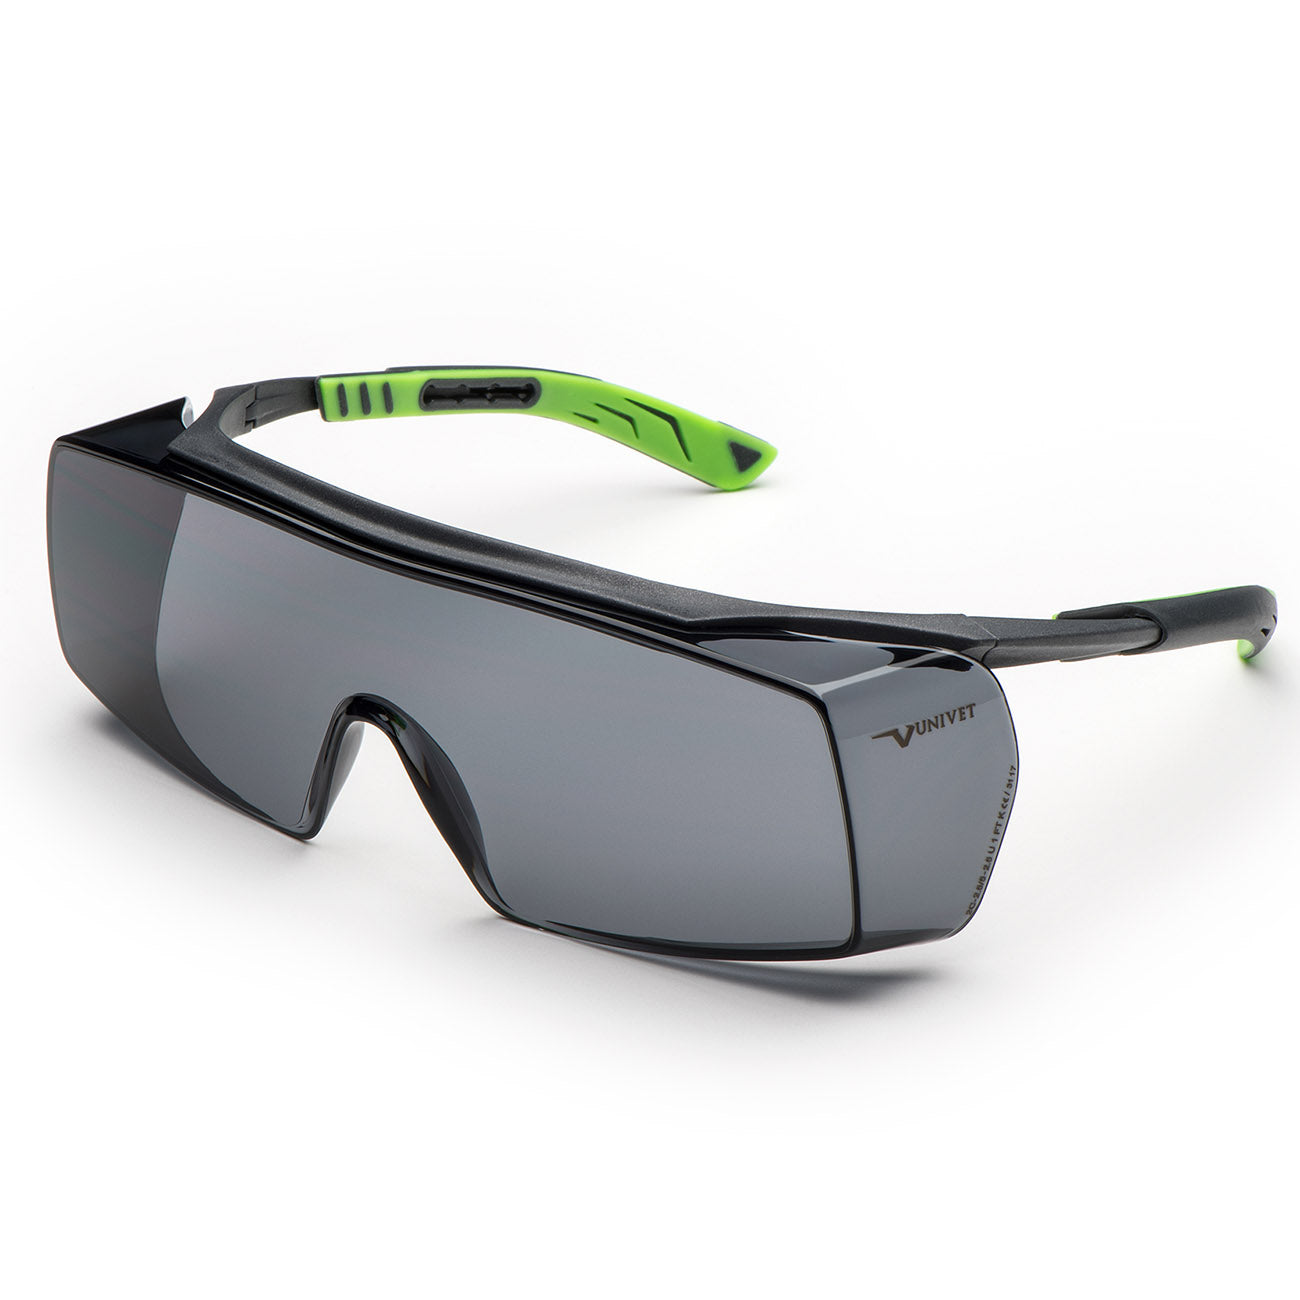 Univet 5X7 Solar Smoke OTG Safety Glasses - 5X7.01.11.02